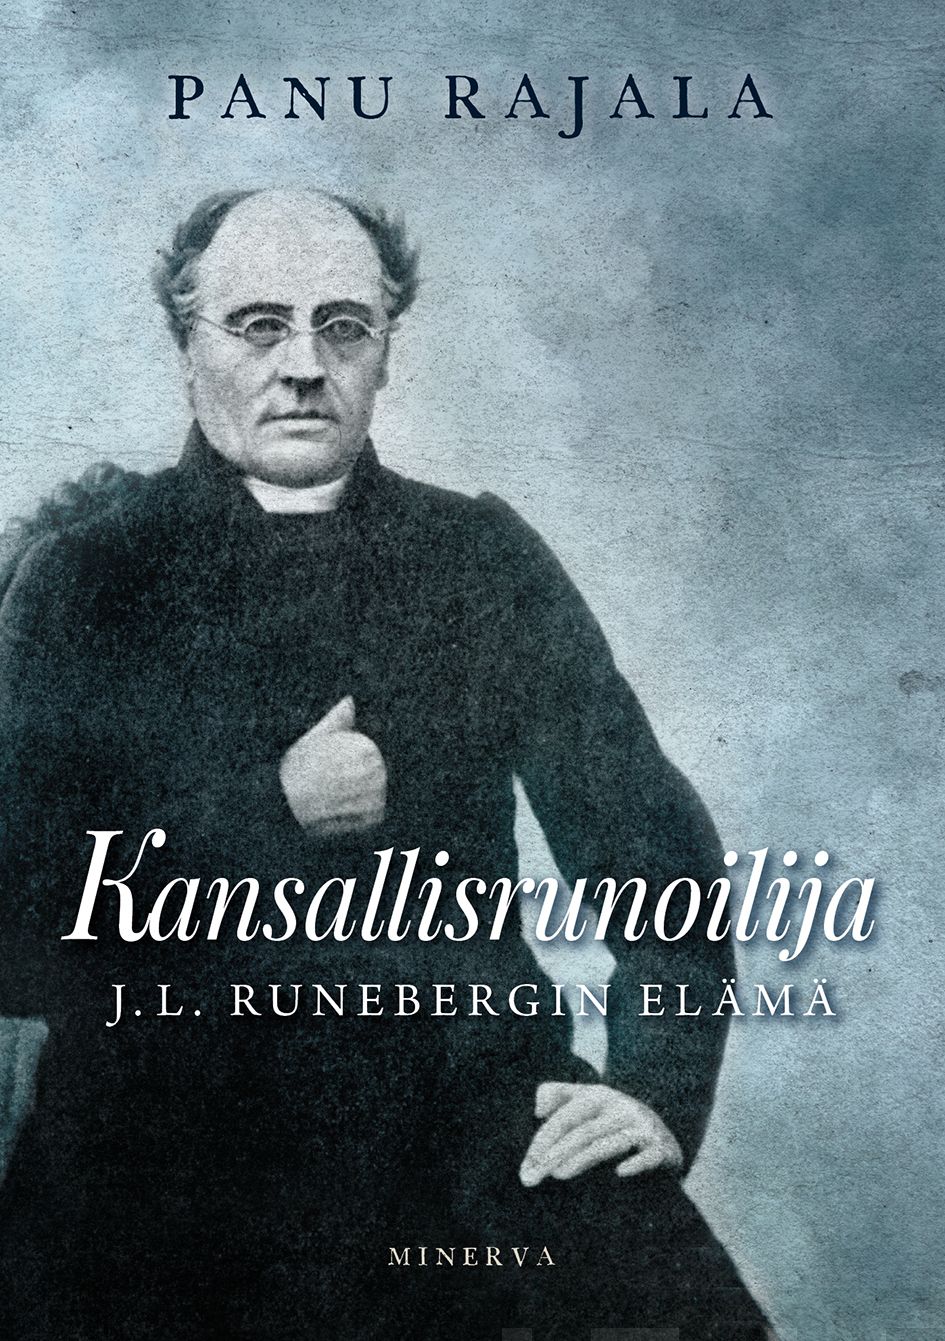 Rajala, Panu - Kansallisrunoilija: J. L. Runebergin elämä, e-kirja